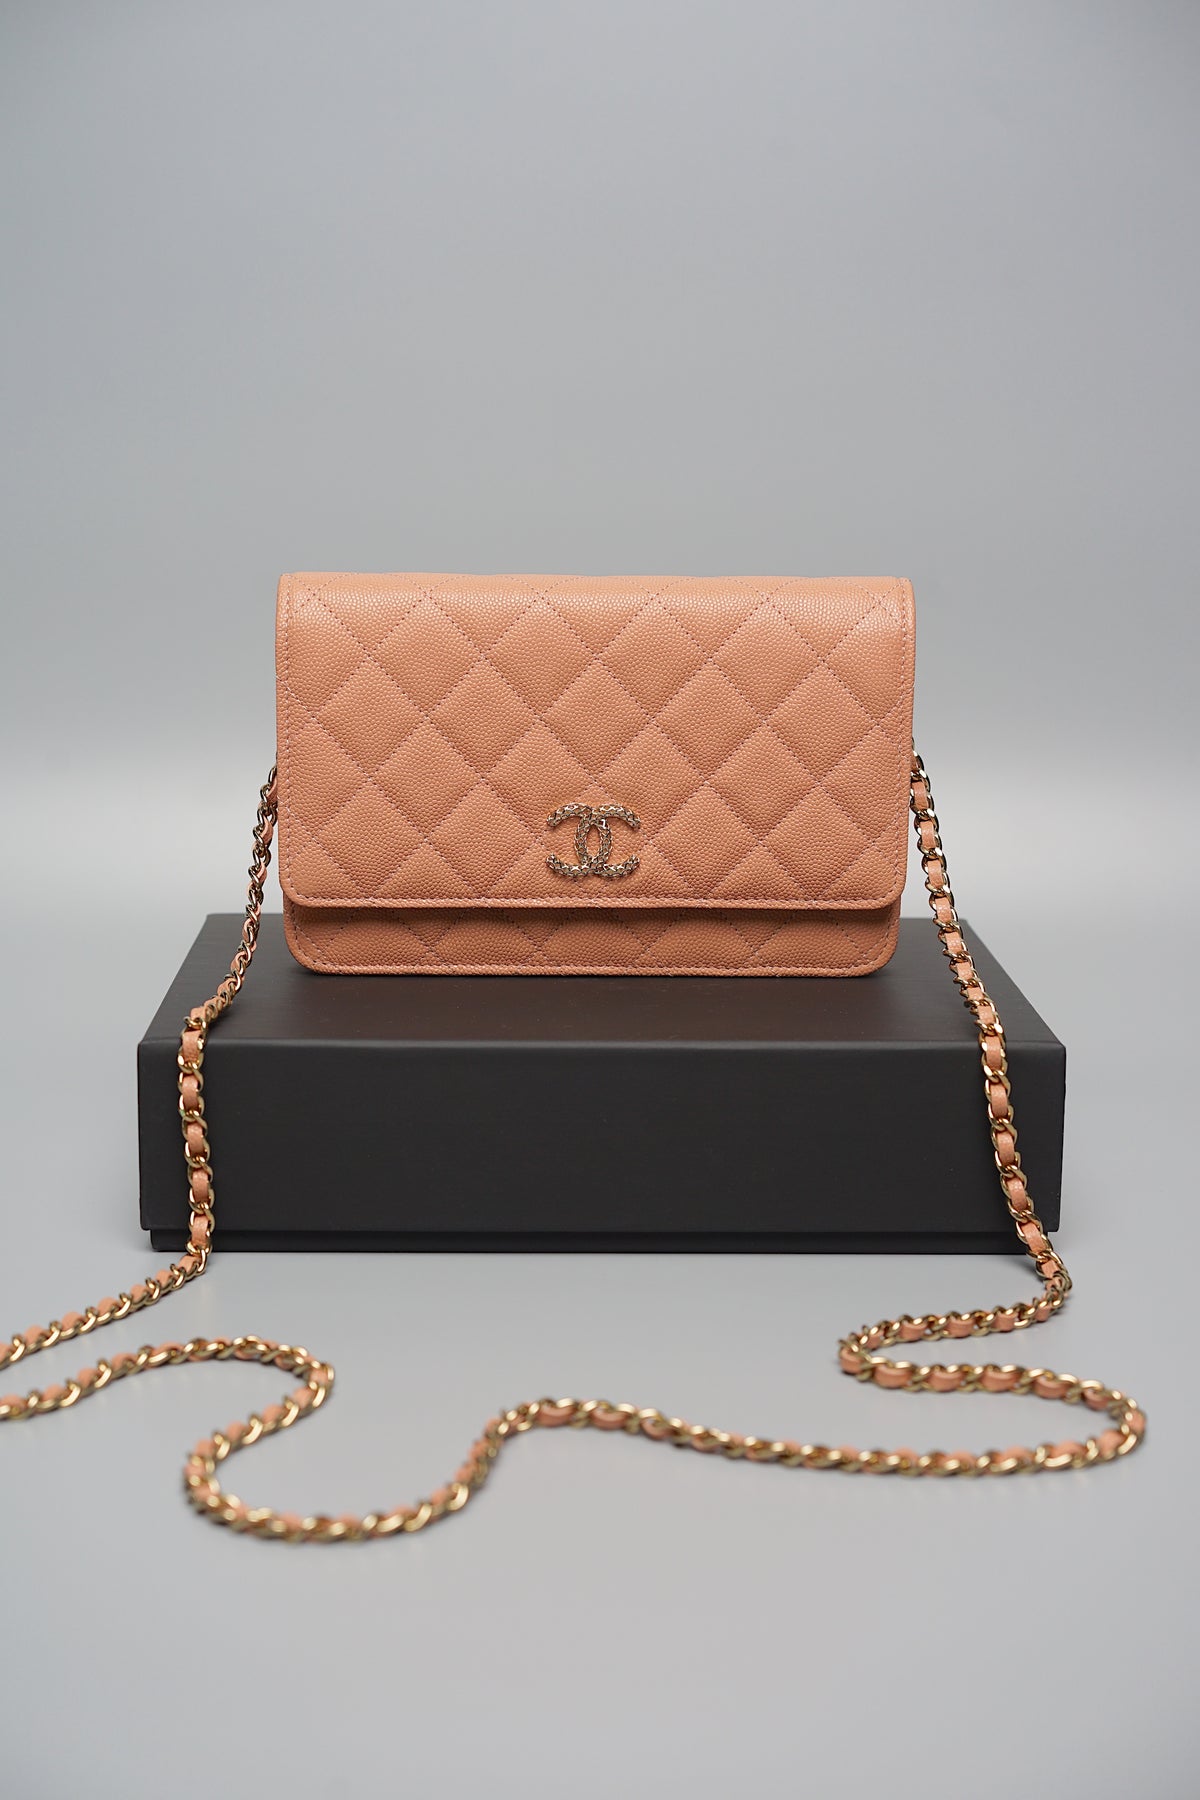 Chanel 23P Wallet on Chain in Dark Beige Caviar (Brand New)– orangeporter